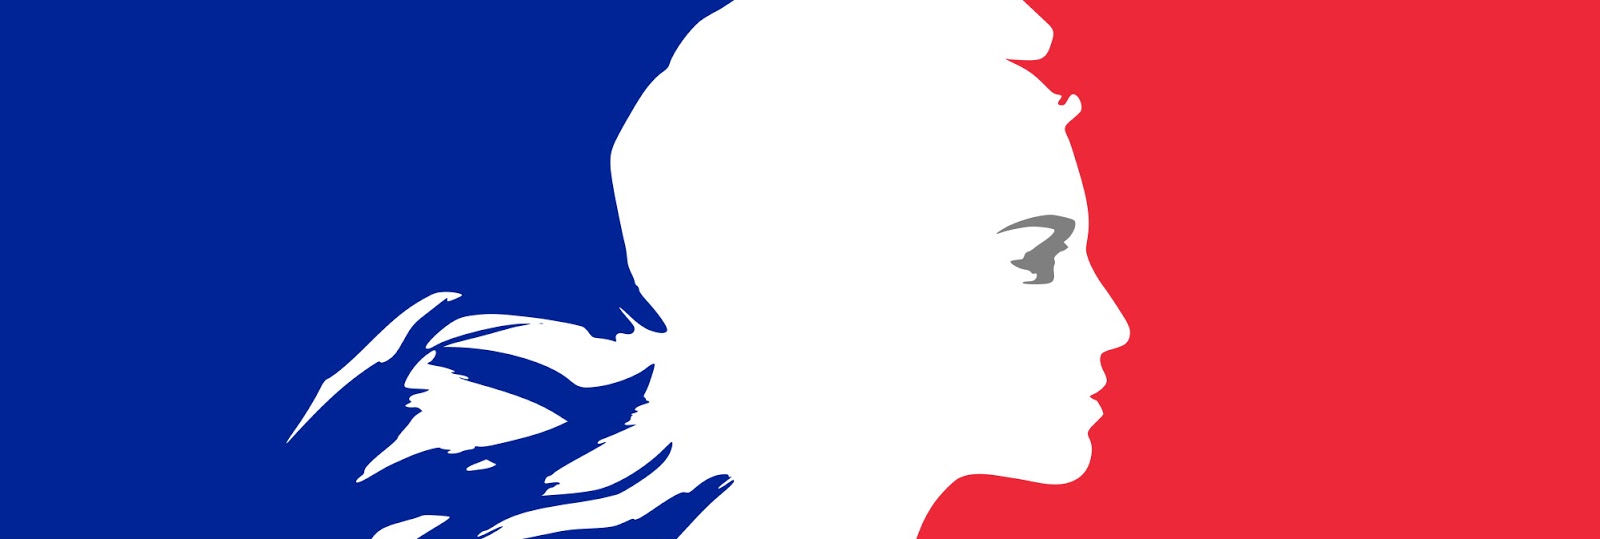 Assassin's Creed 5 : Marianne, l'Assassin de la Liberté, l'Assassin de Paris !